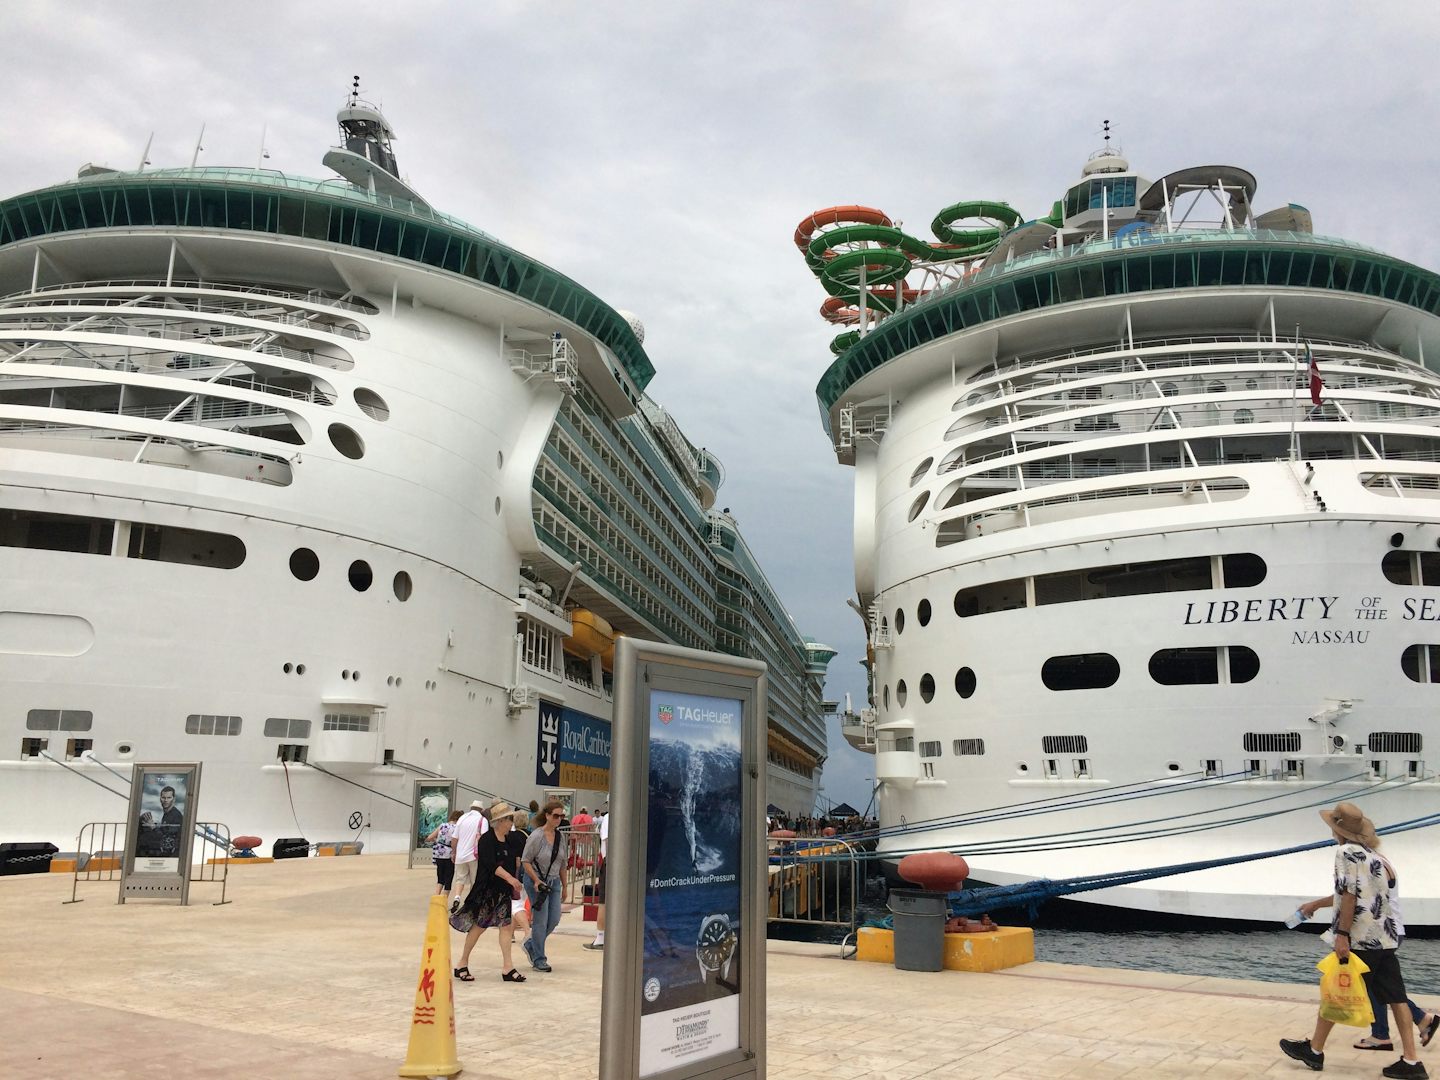 2 ships at dock.